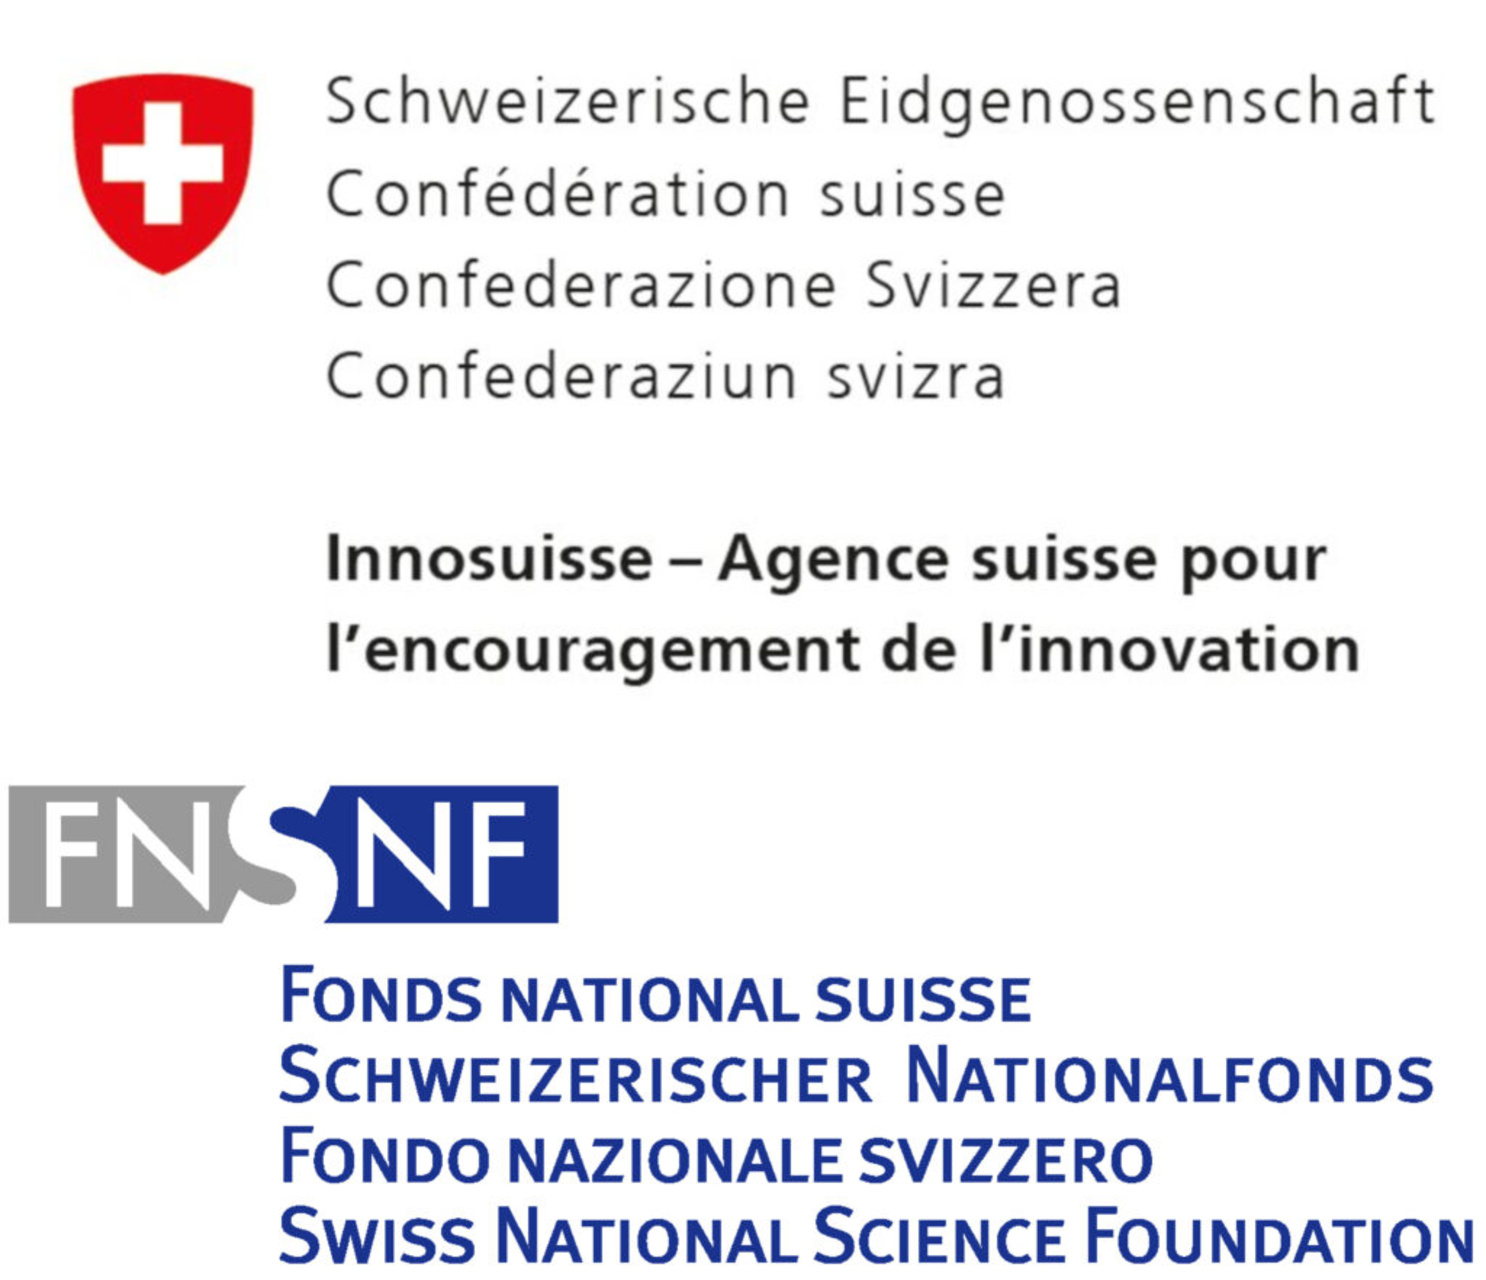 การศึกษา การวิจัย และนวัตกรรม: ข้อความถึงรัฐสภาของสภากลางเพื่อส่งเสริมภาค ERI ในช่วงสี่ปี 2025-2028 และเพื่อความเป็นผู้นำของสวิตเซอร์แลนด์